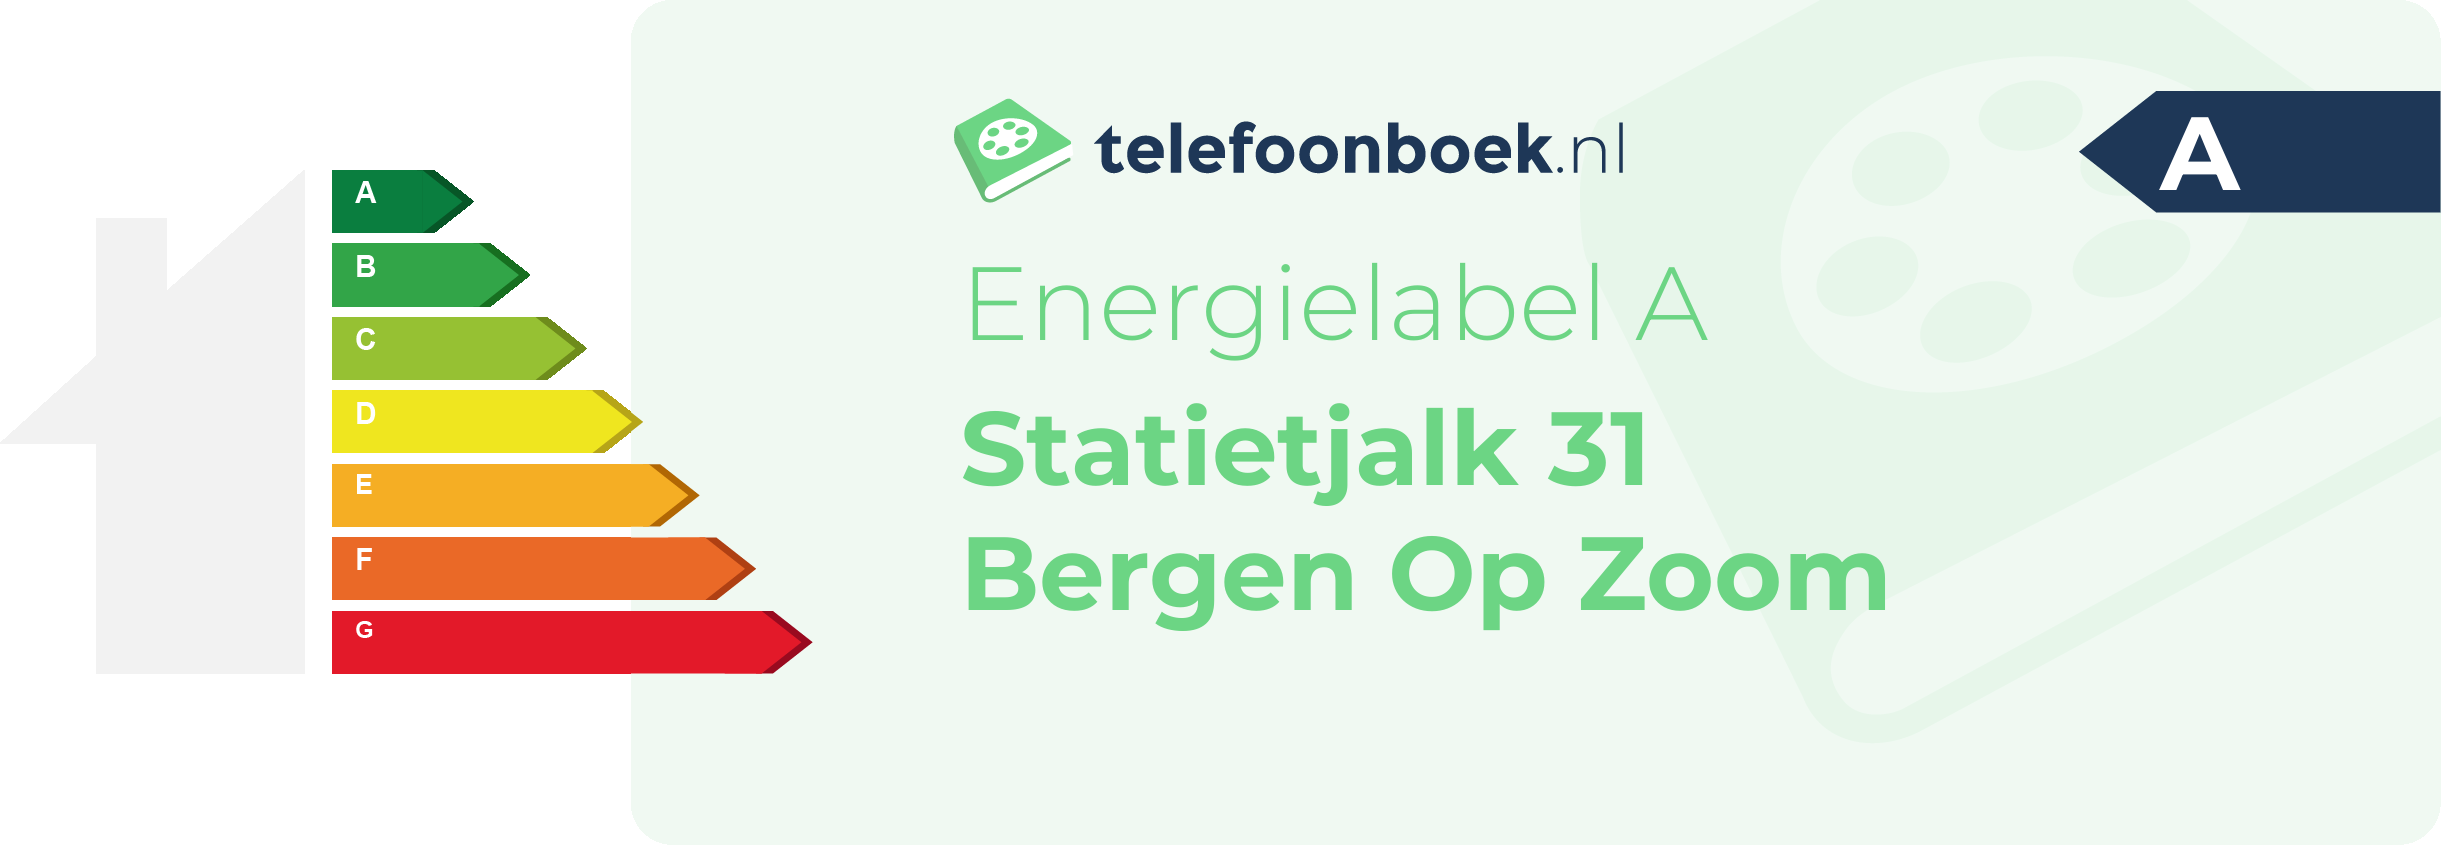 Energielabel Statietjalk 31 Bergen Op Zoom